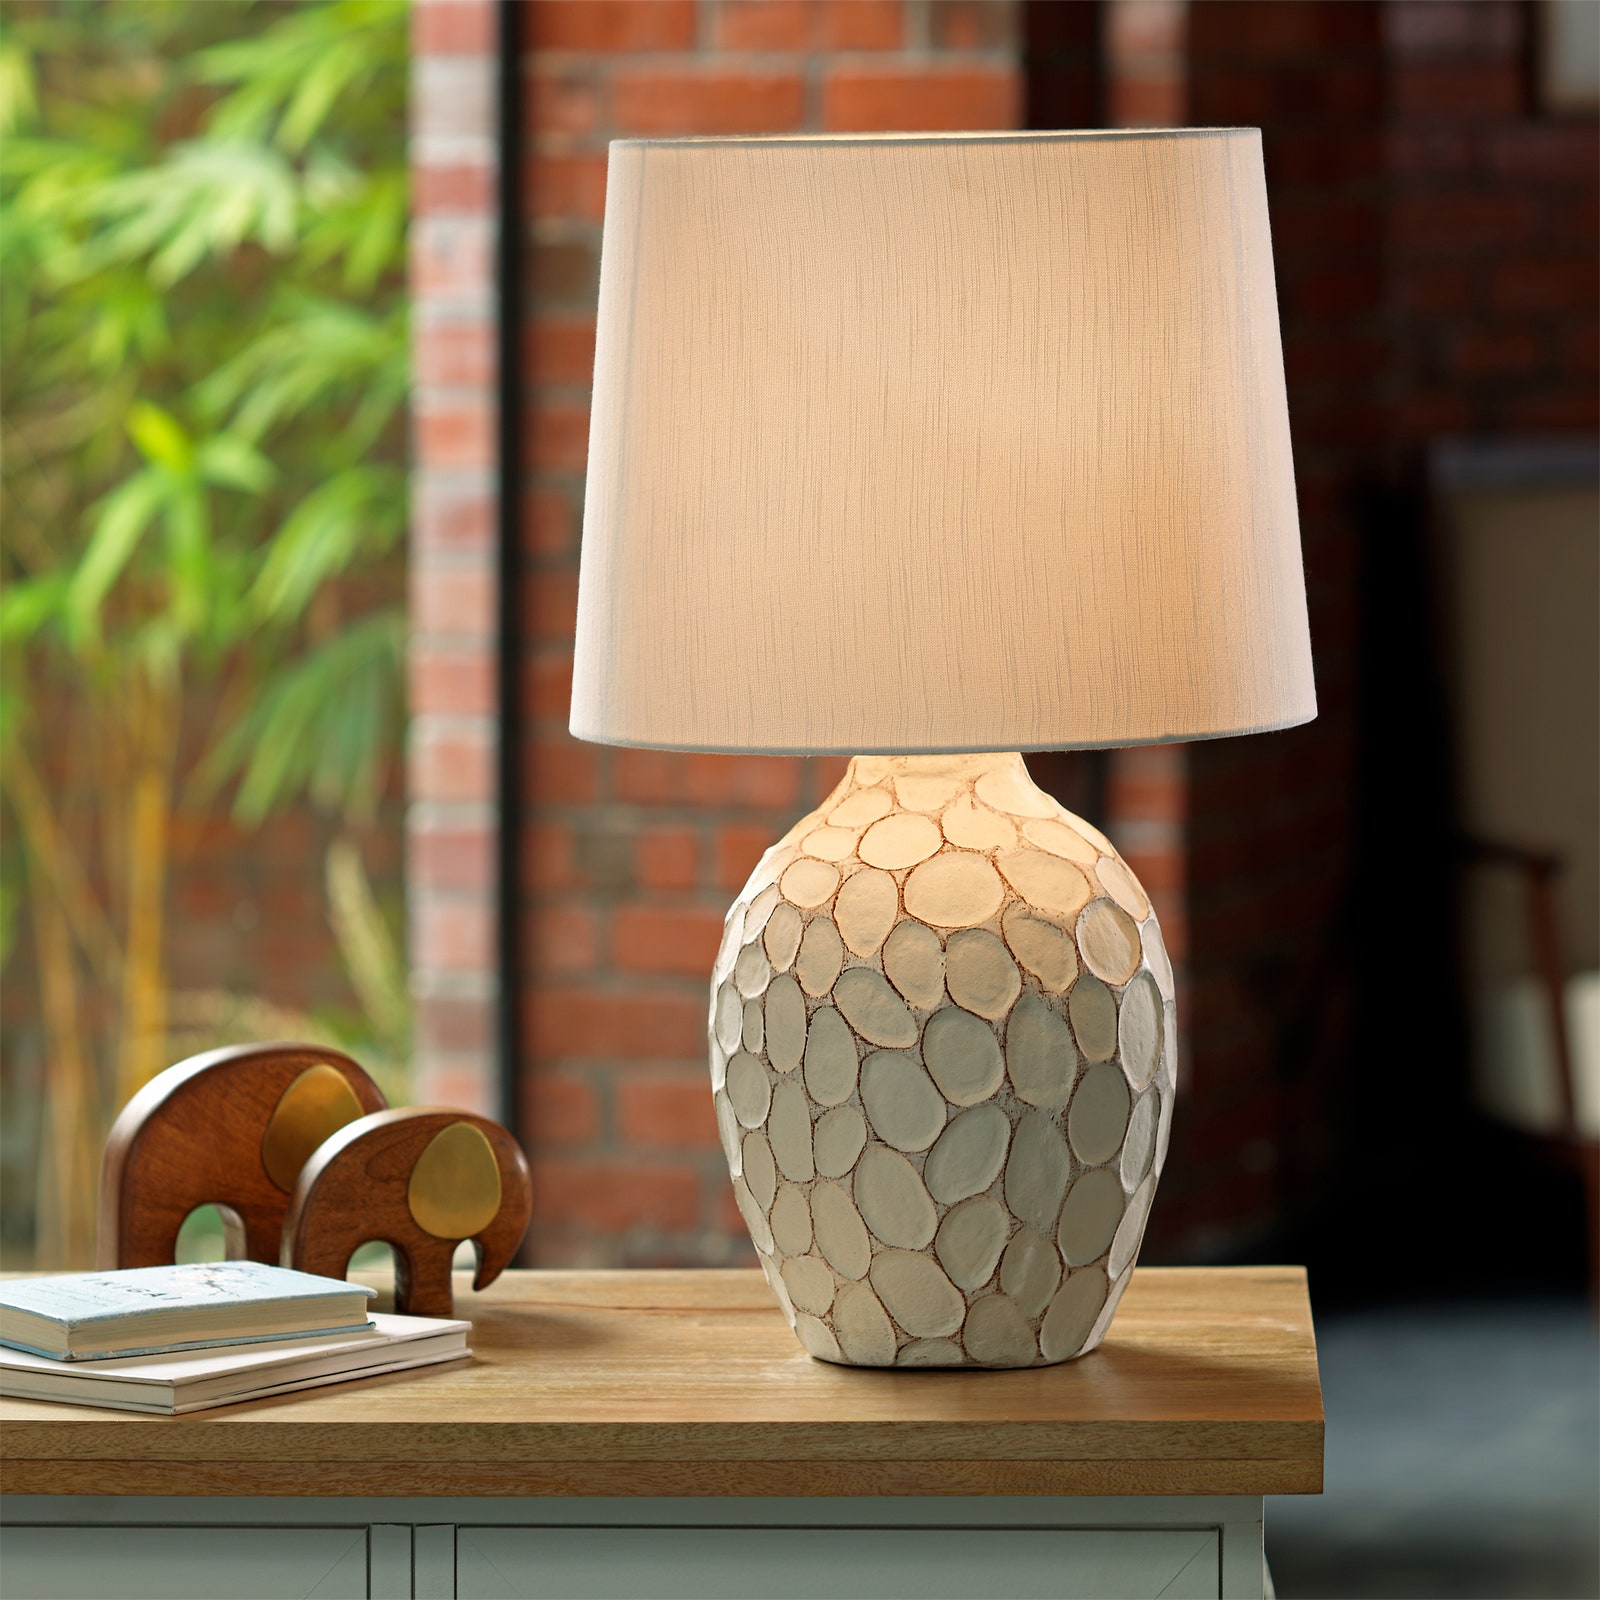 Kiểu dáng thanh lịch, sắc màu trang nhã của chiếc đèn bàn có tên gọi Pebble Pot này có thể được đặt ở bất cứ đâu. Dù là trên táp đầu giường, trong phòng khách hay góc làm việc tại gia đều vô cùng phù hợp.